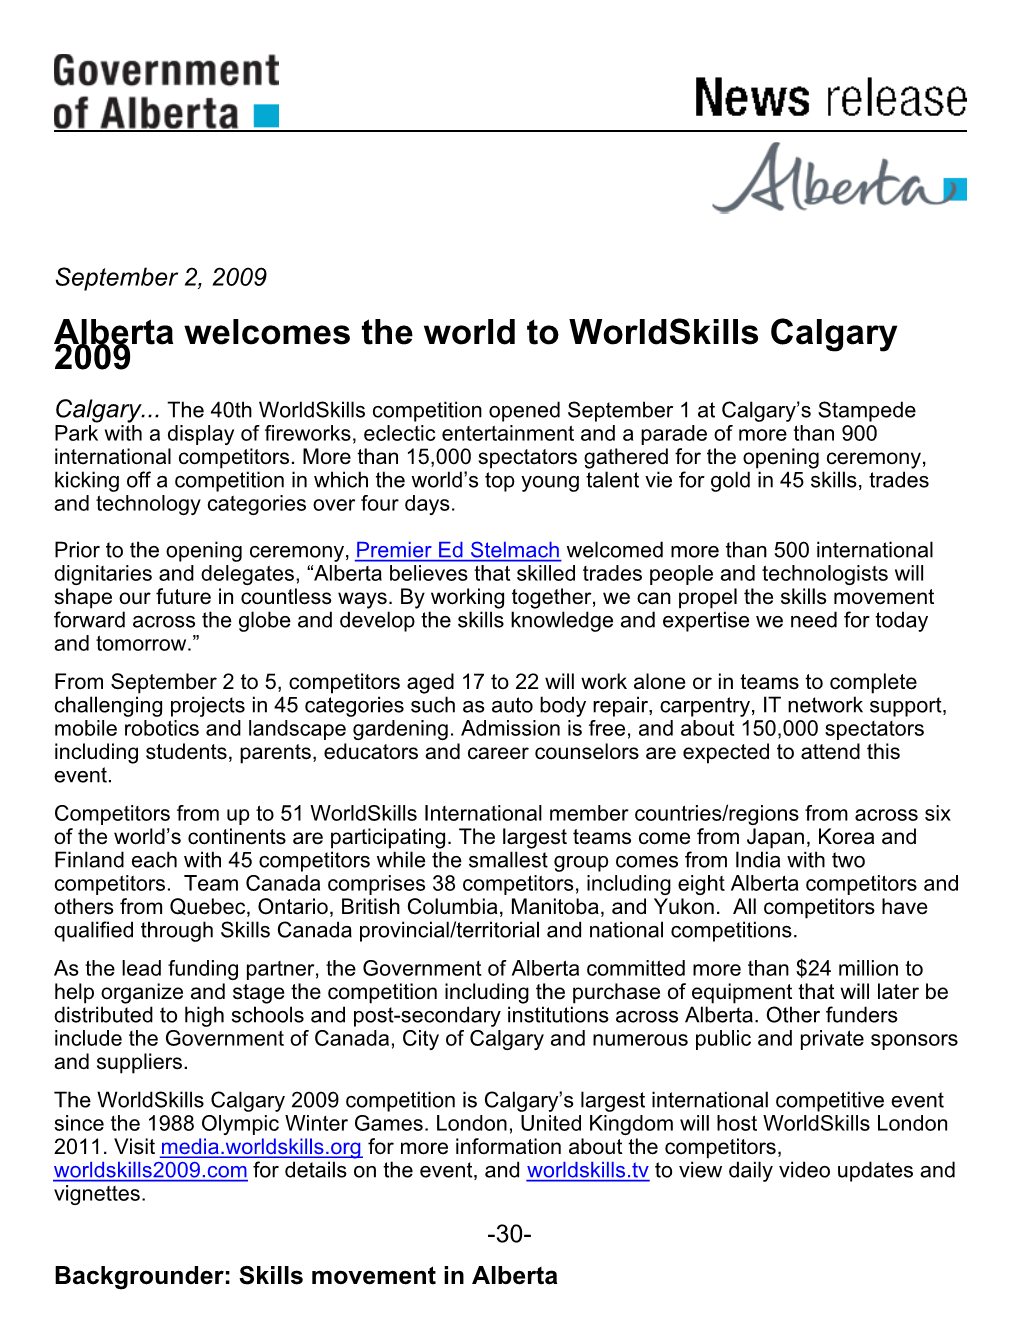 Alberta Welcomes the World to Worldskills Calgary 2009